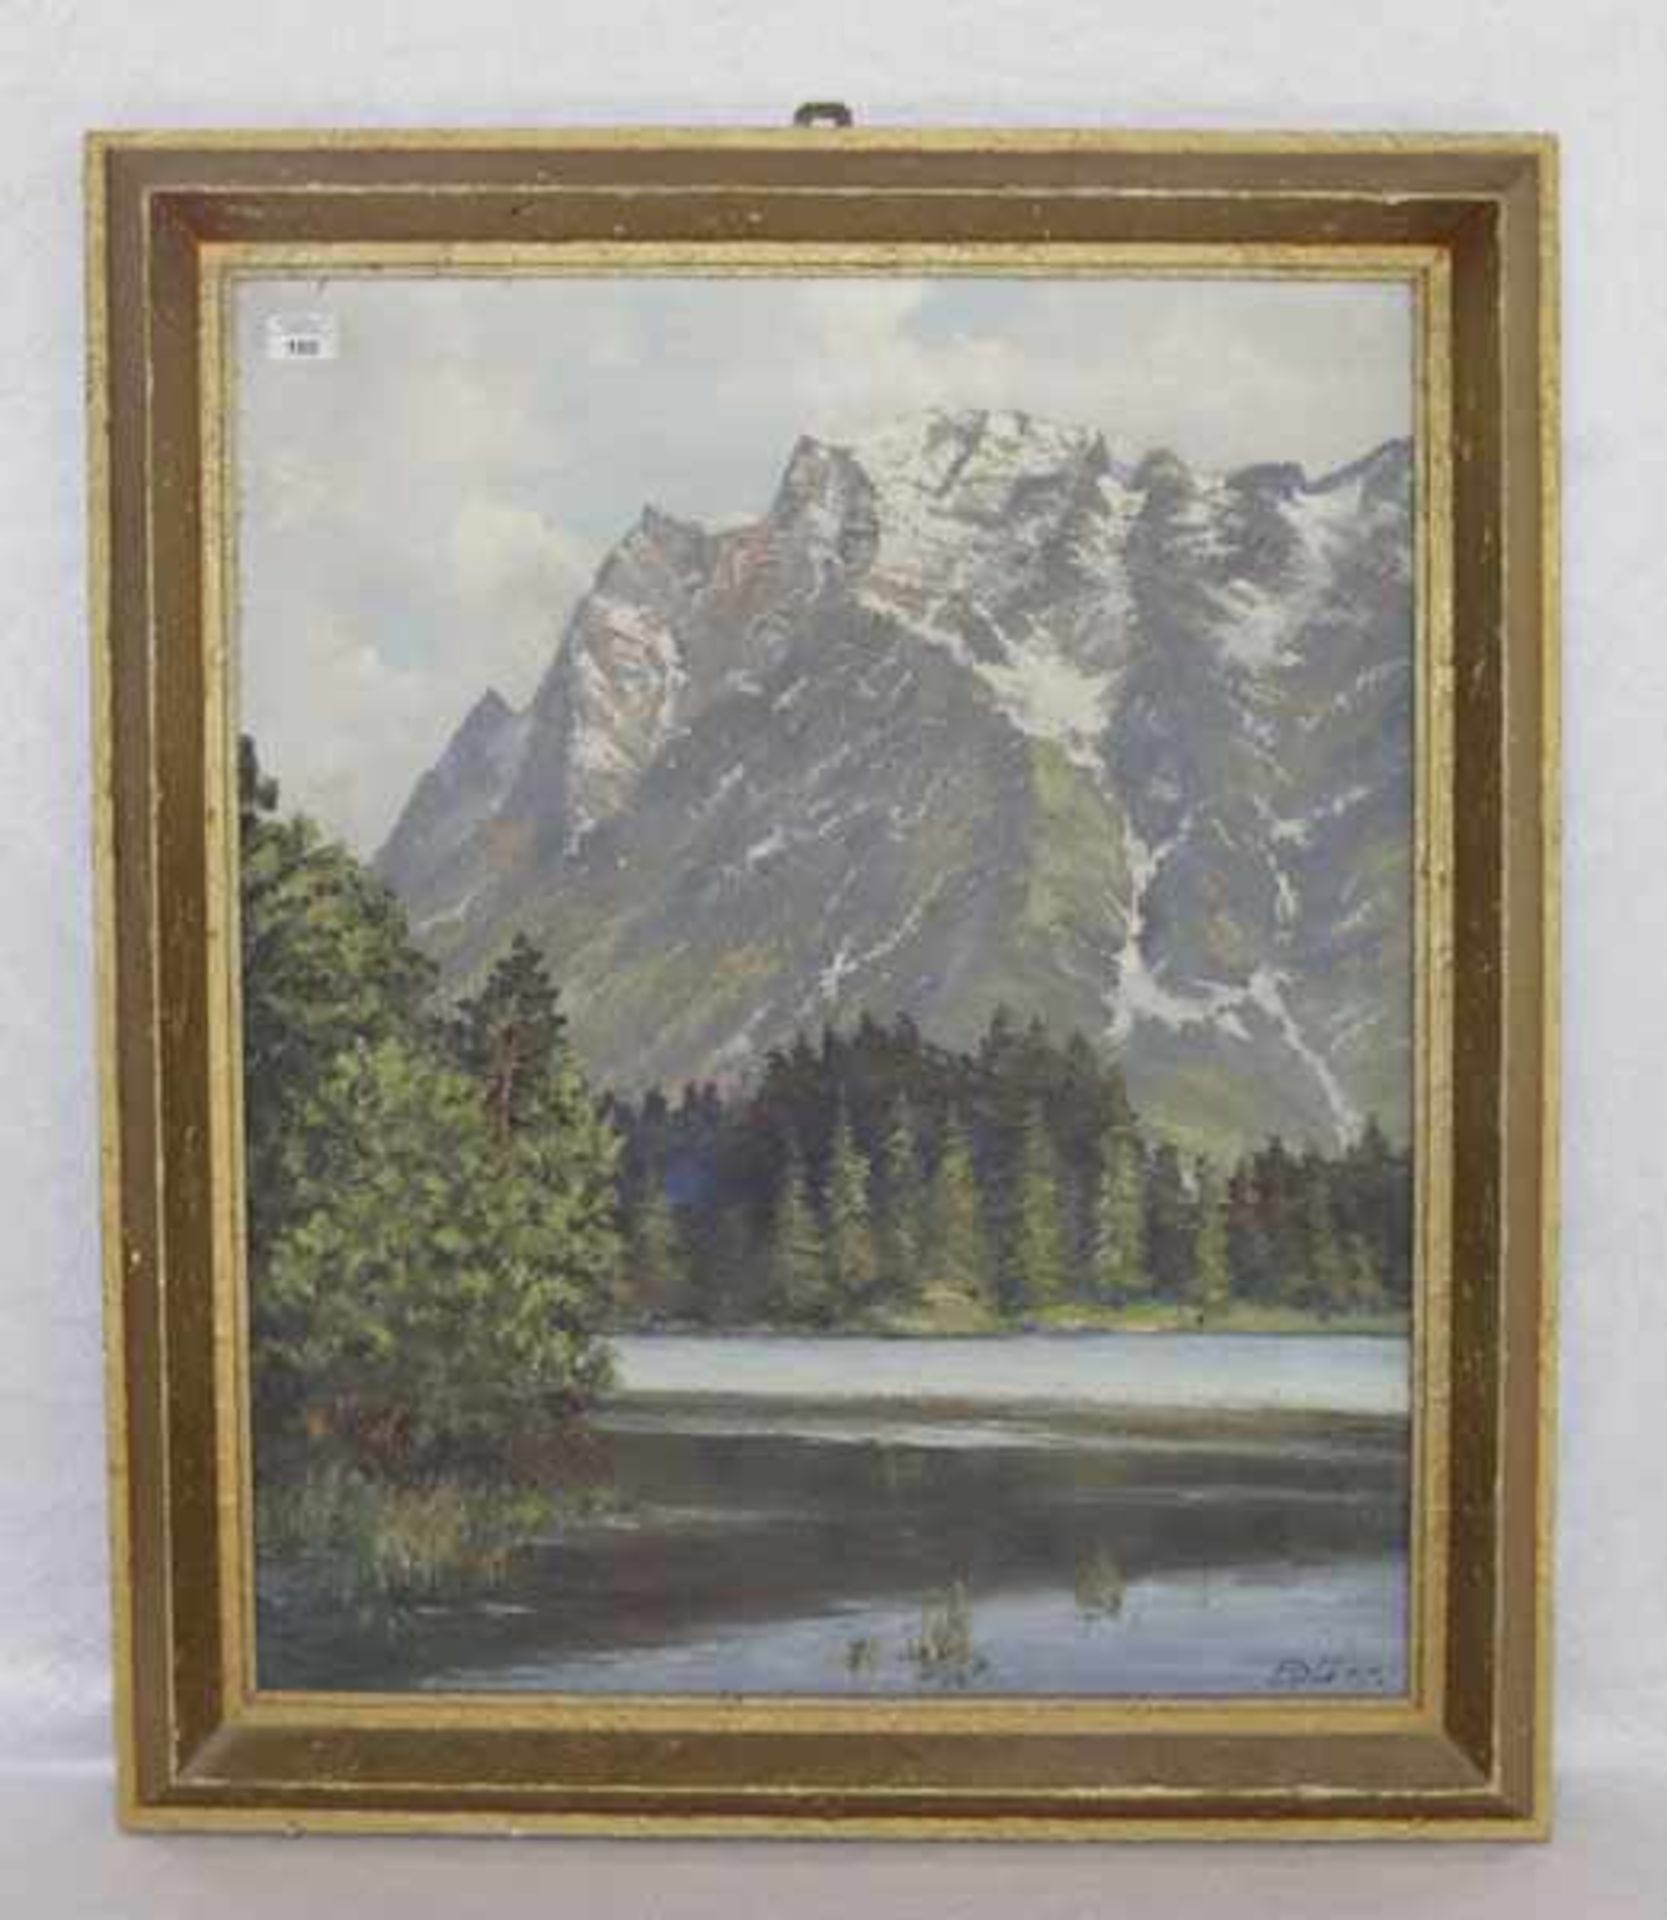 Gemälde ÖL/LW 'Eibsee mit Zugspitze', signiert Dürr, gerahmt, Rahmen beschädigt, incl. Rahmen 95